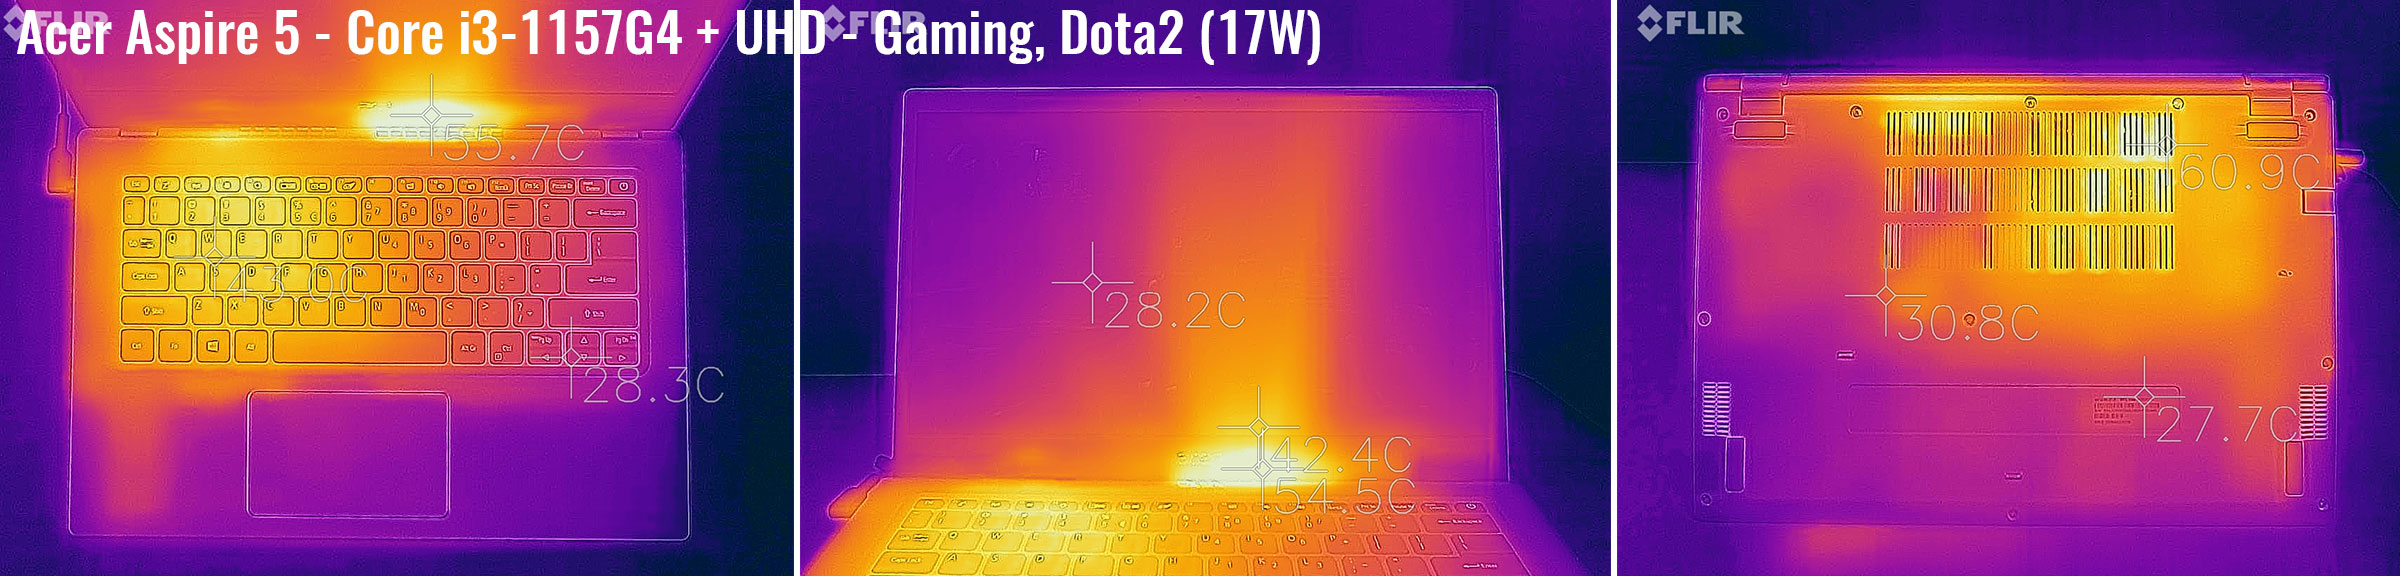 temperatures acer aspire5 gaming dota2